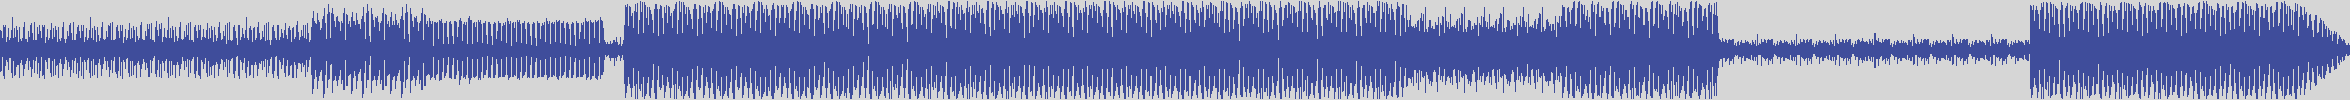 nf_boyz_records [NFY057] Waldo Scott - My Mac [Club Tribal Mix] audio wave form